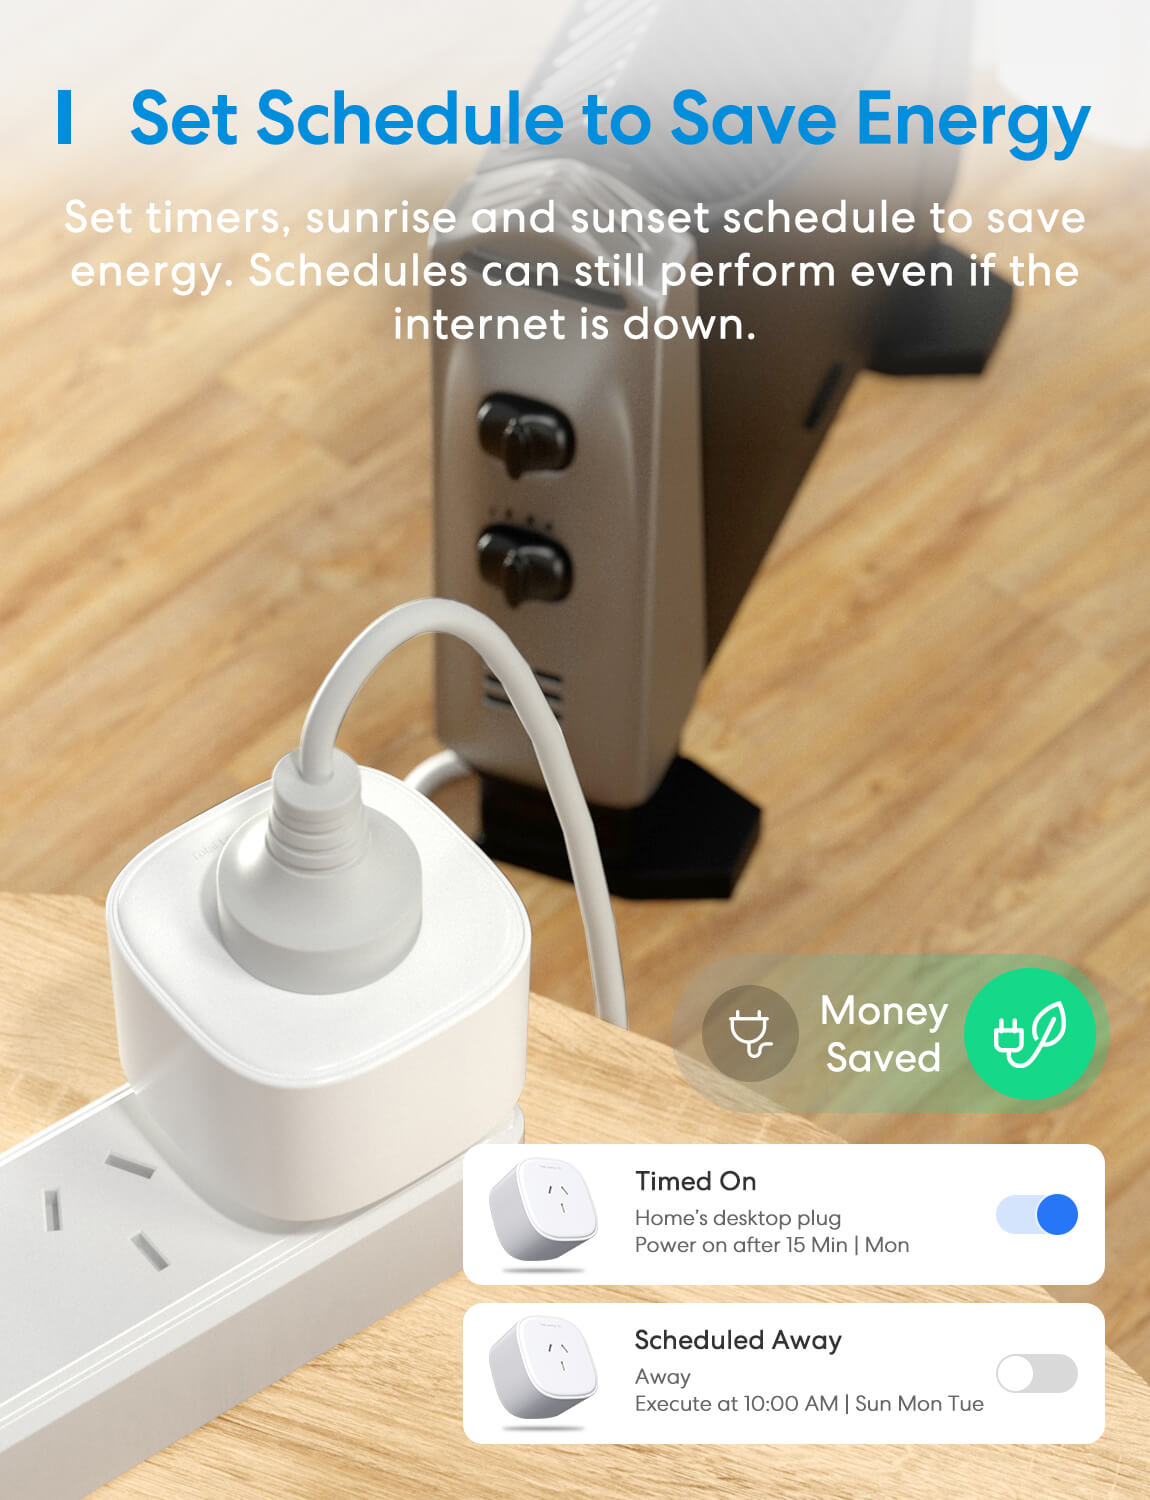 Meross Smart Power Strip, Works with Apple HomeKit EU/FR Version – Meross  Official Store